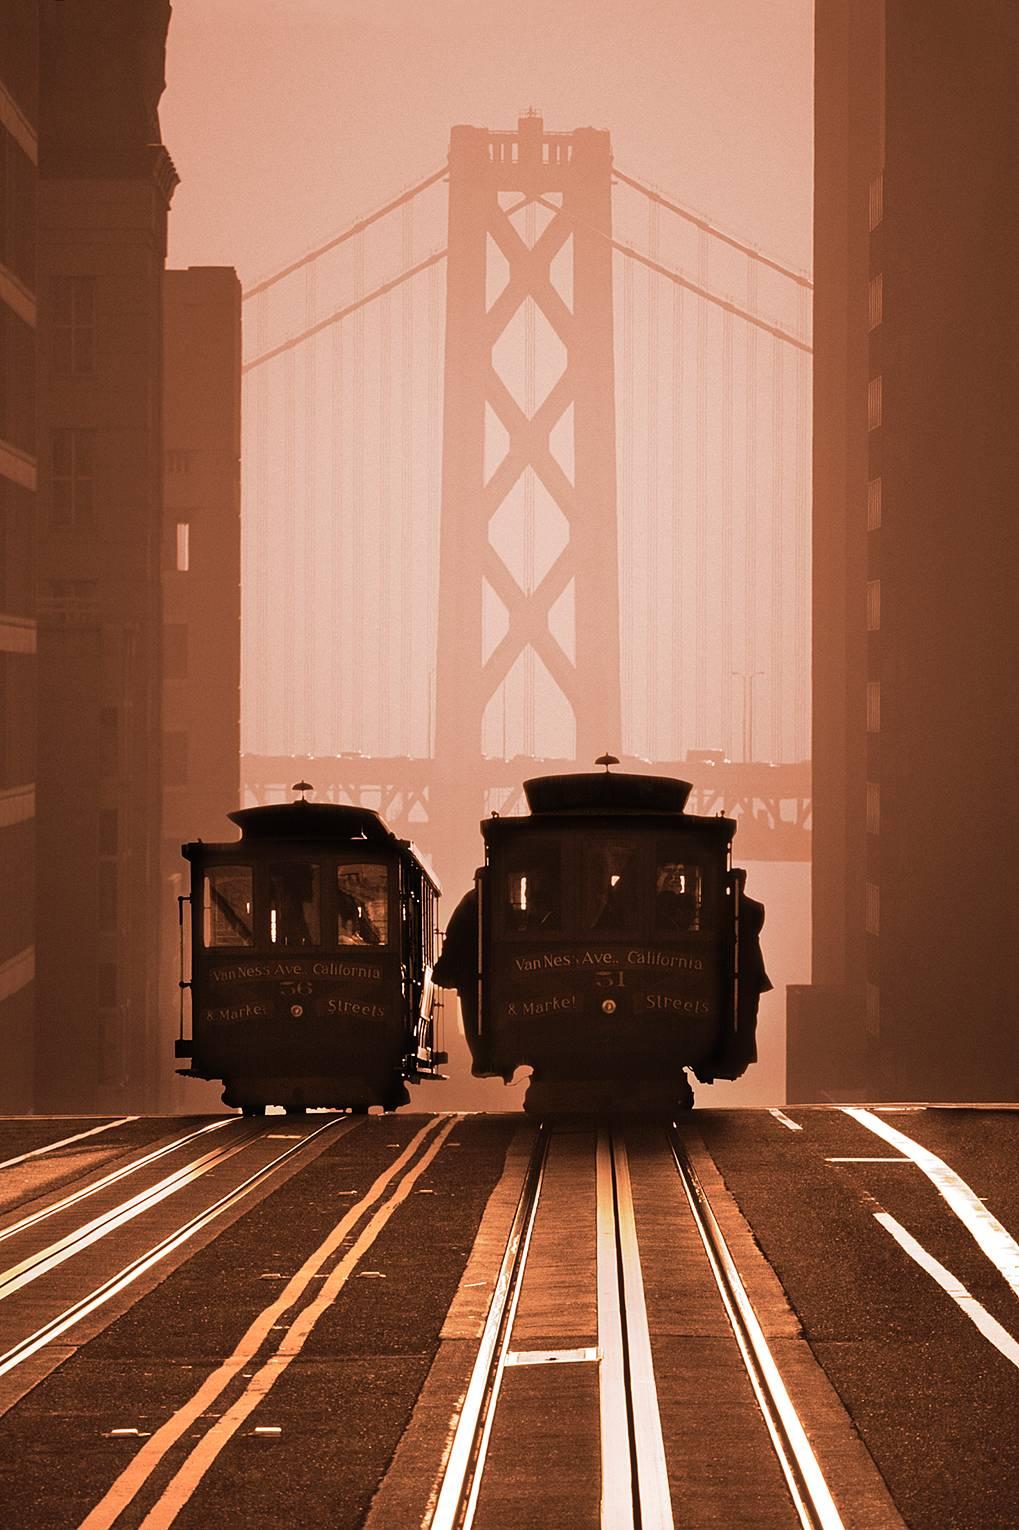 Paysage de voitures câblées de San Francisco contre le pont de la baie,  Photographie urbaine